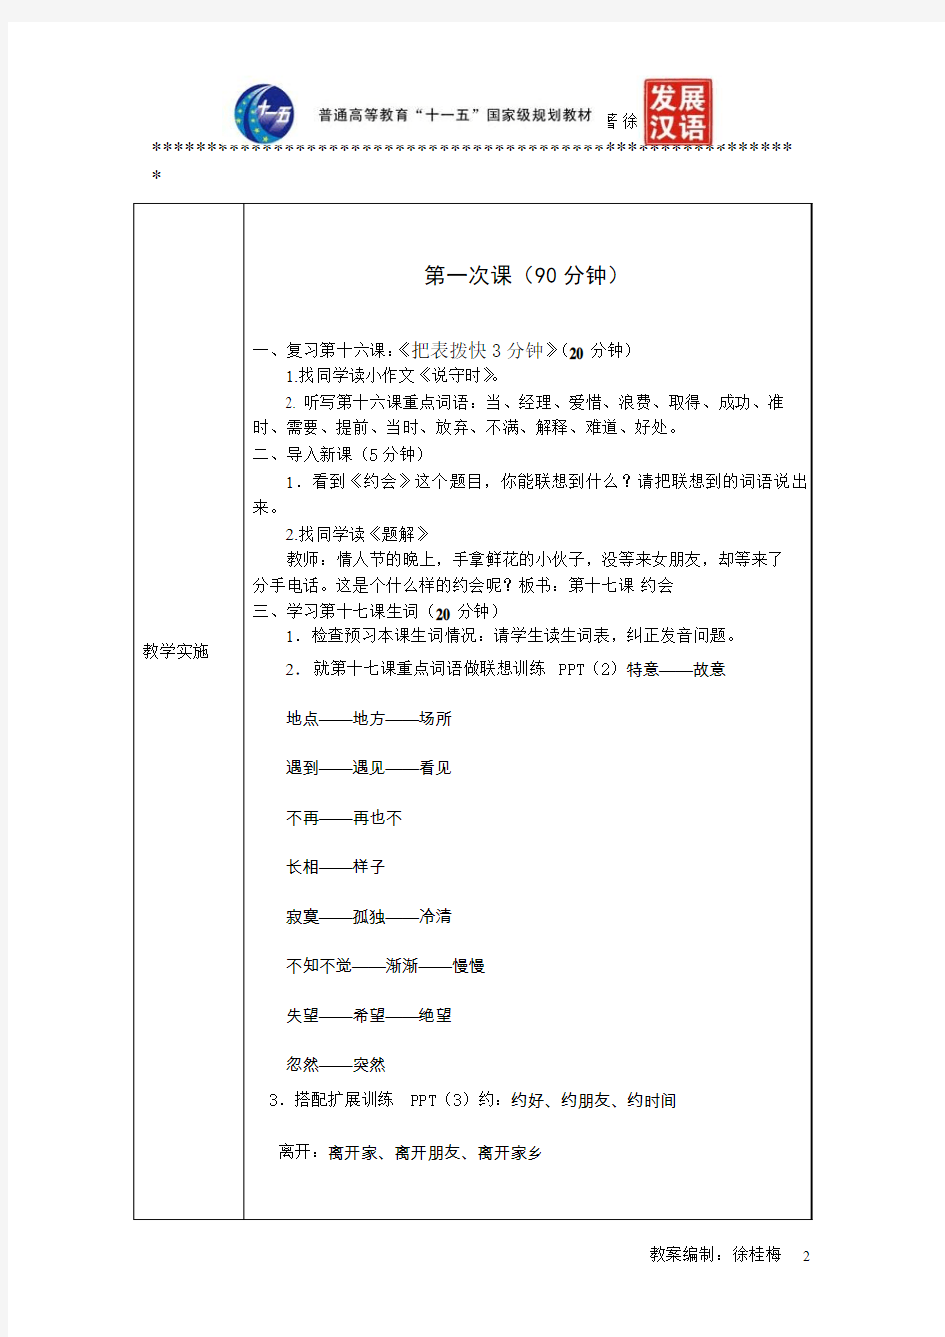 《发展汉语(第二版)综合初级Ⅱ》教案第17课《约会》